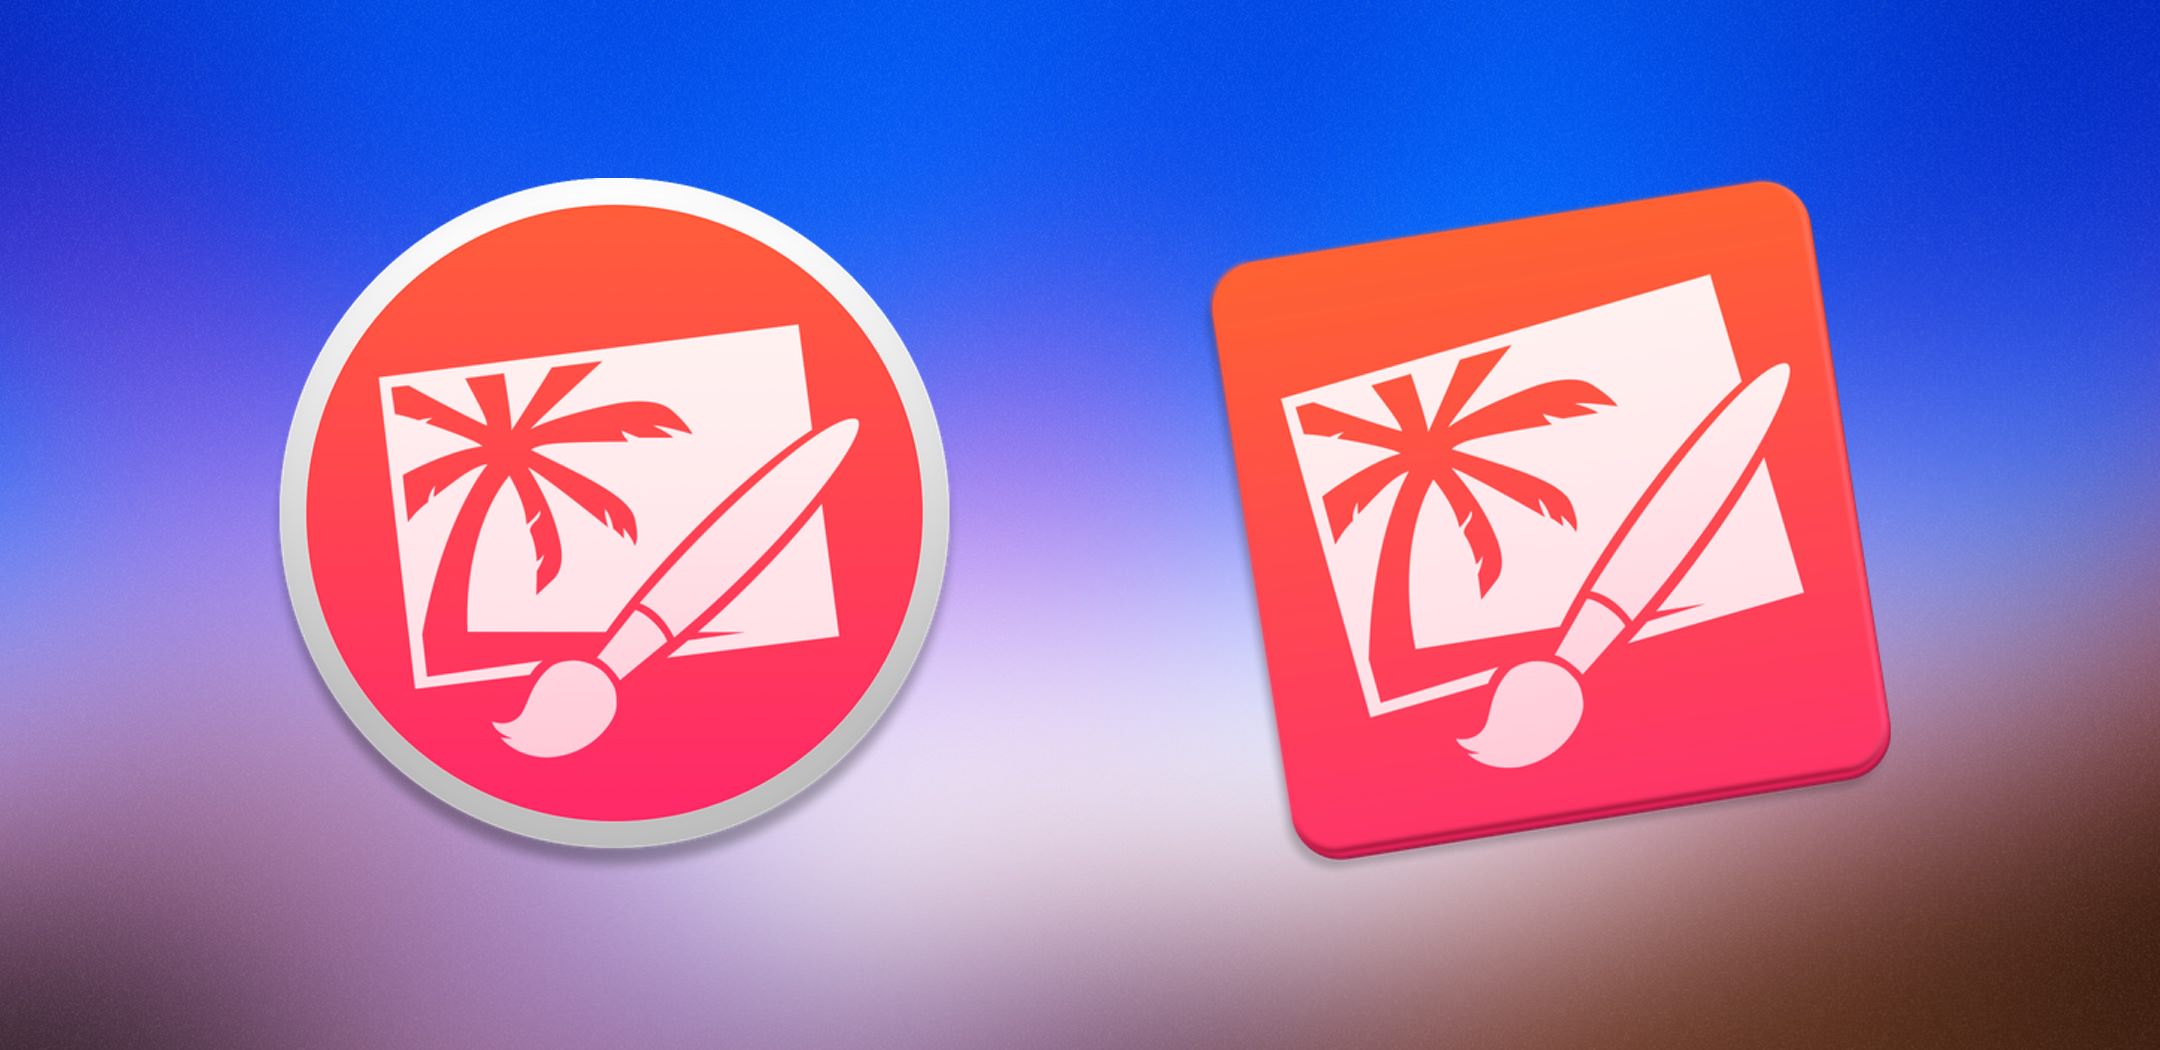 Iconos OS X Yosemite: Pixelmator